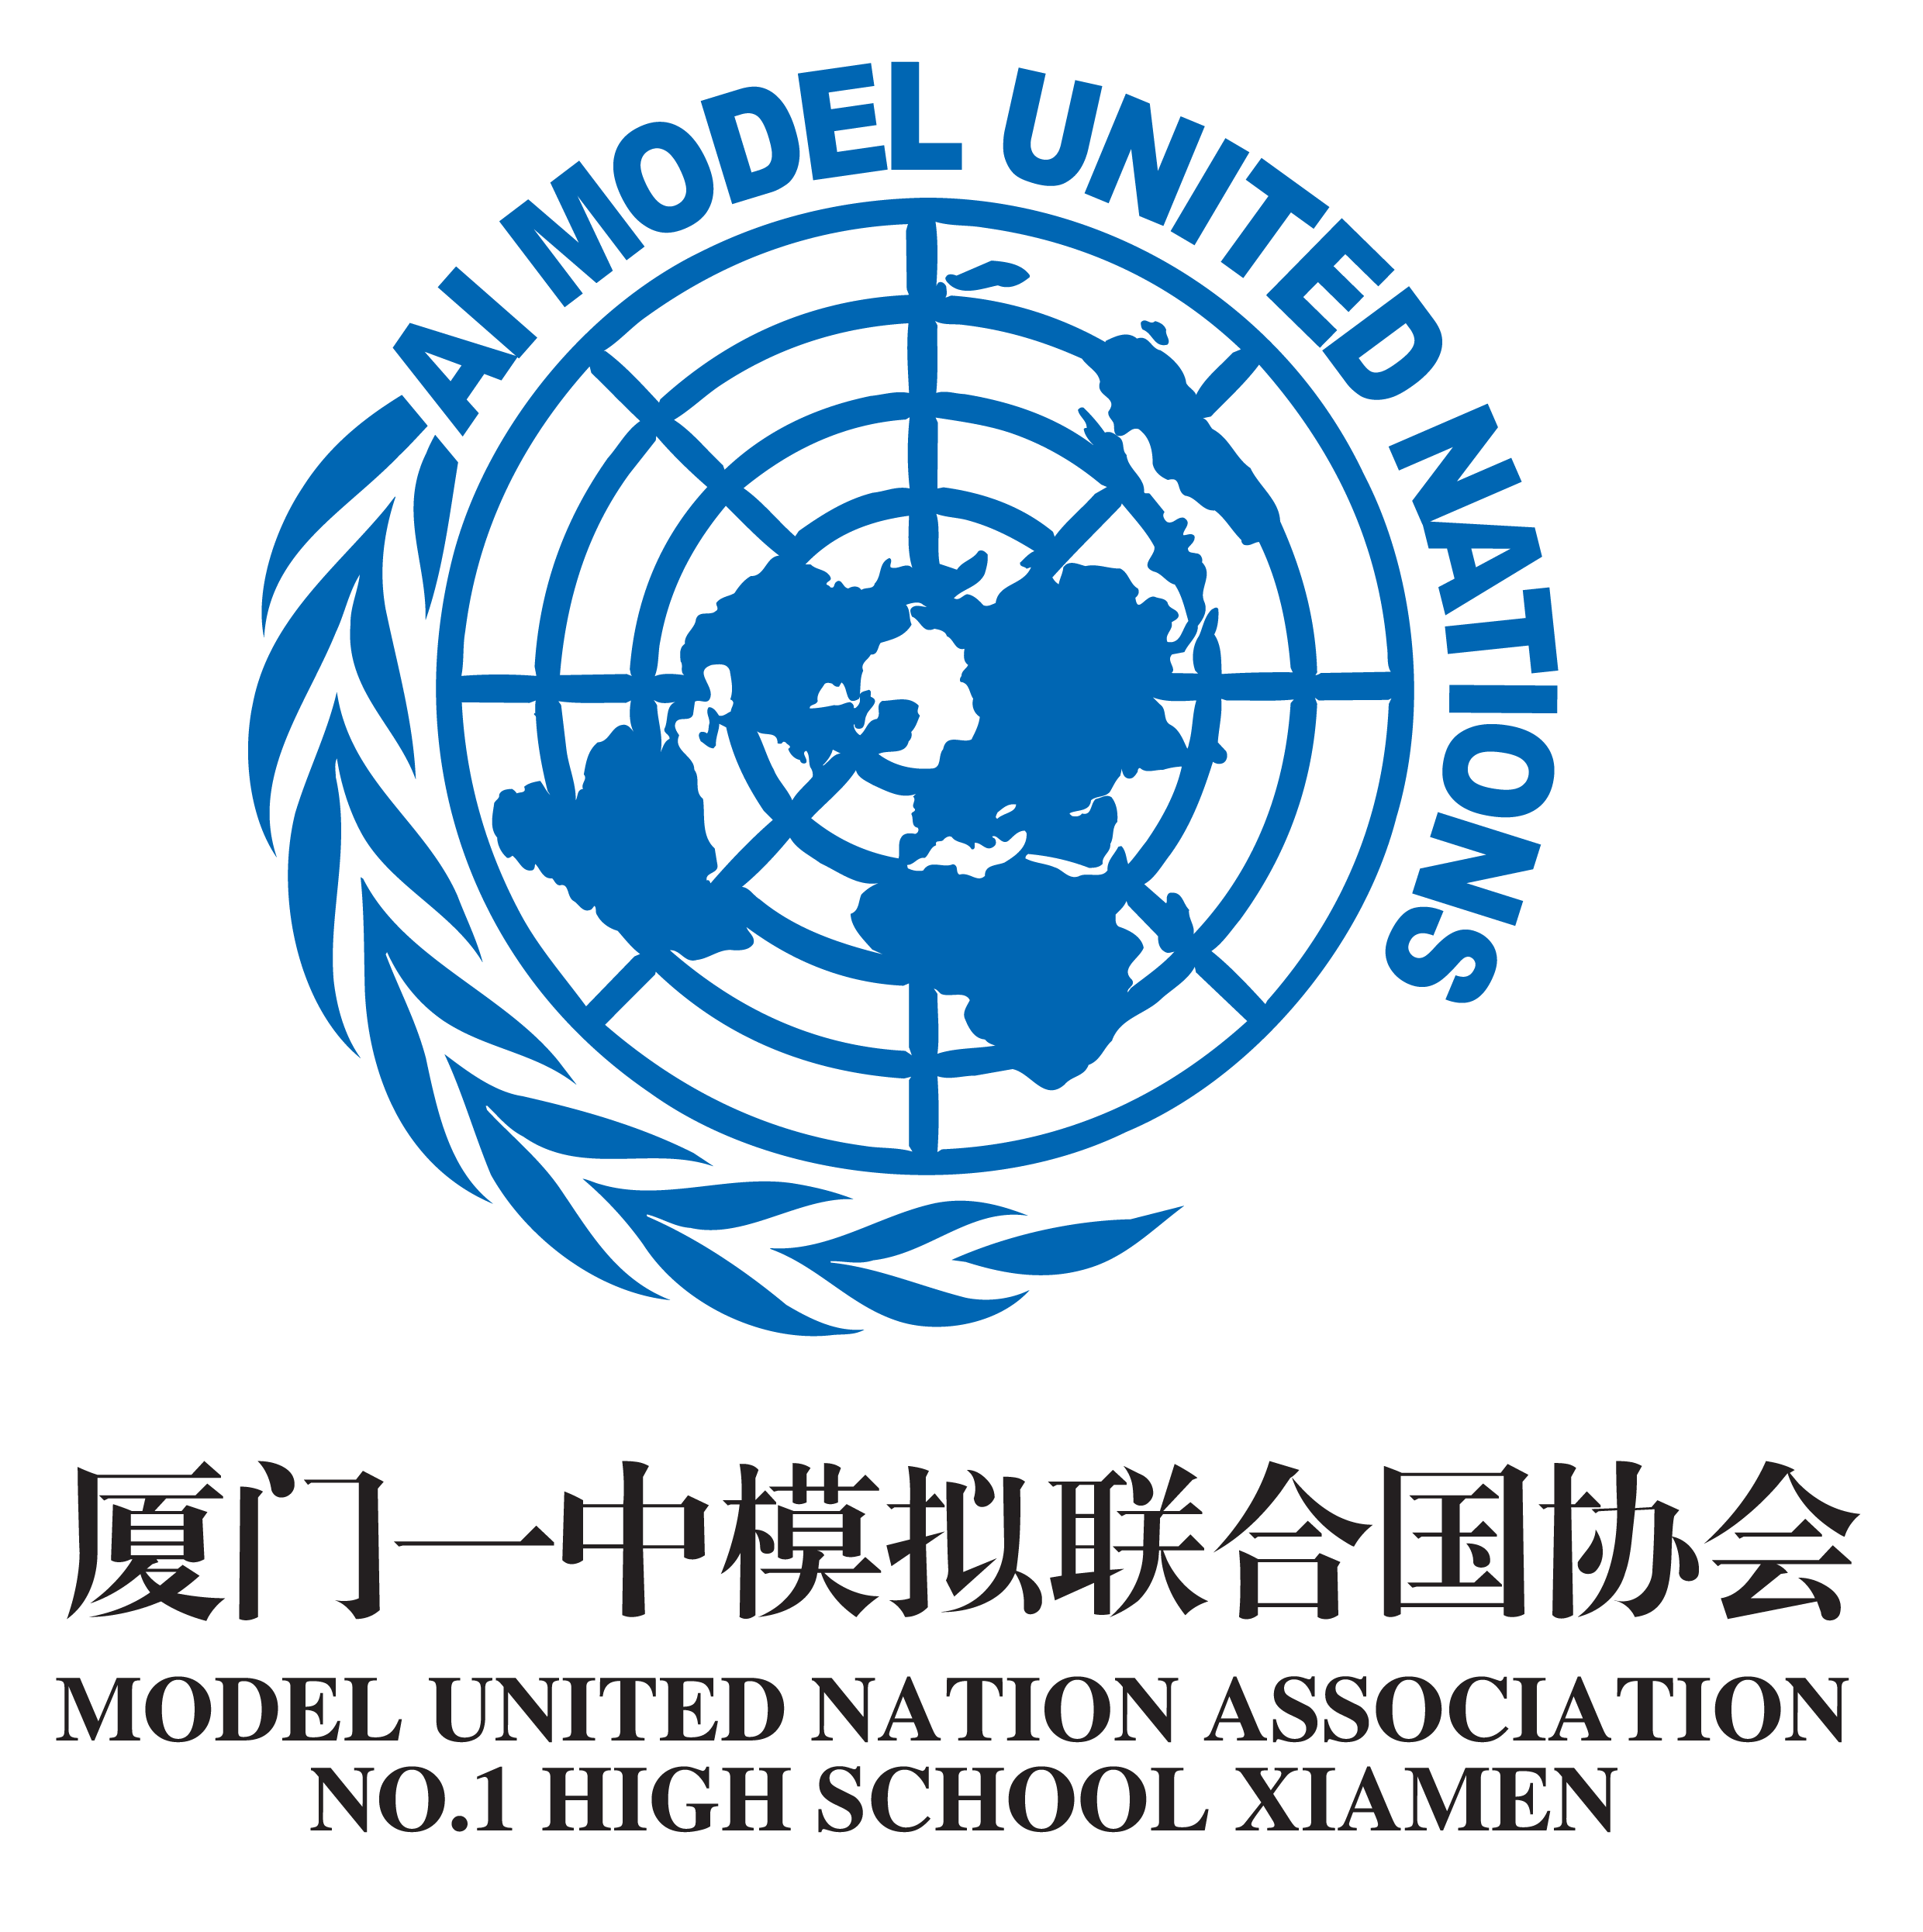 廈門一中模擬聯合國協會